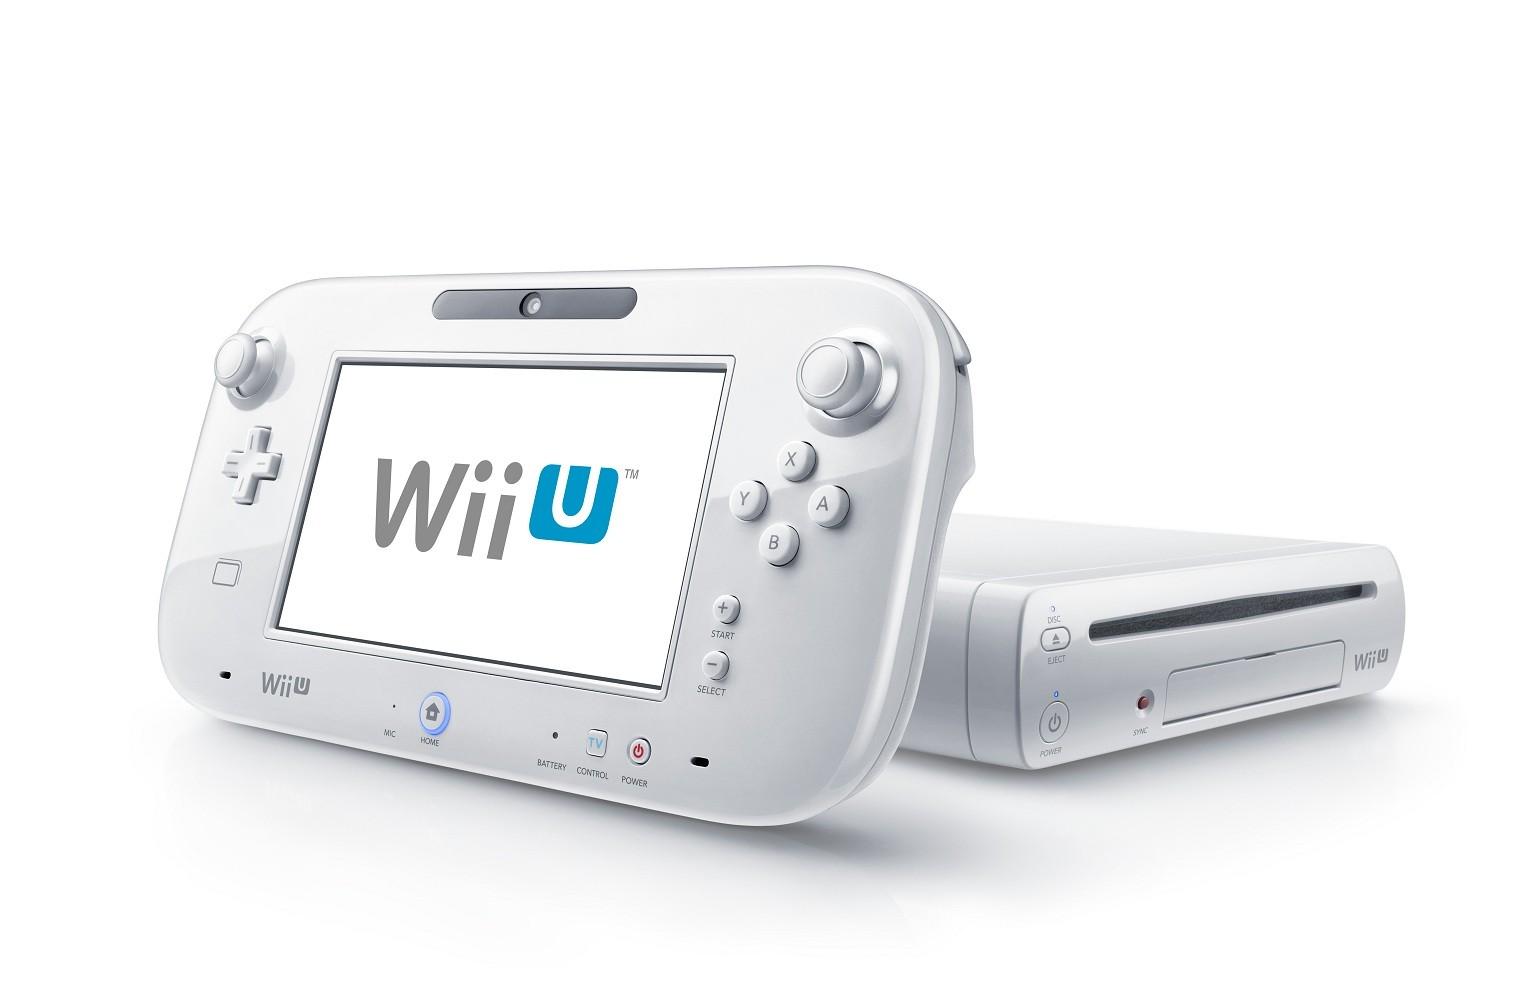 Rumor: Some Huge Wii U Games Coming Soon